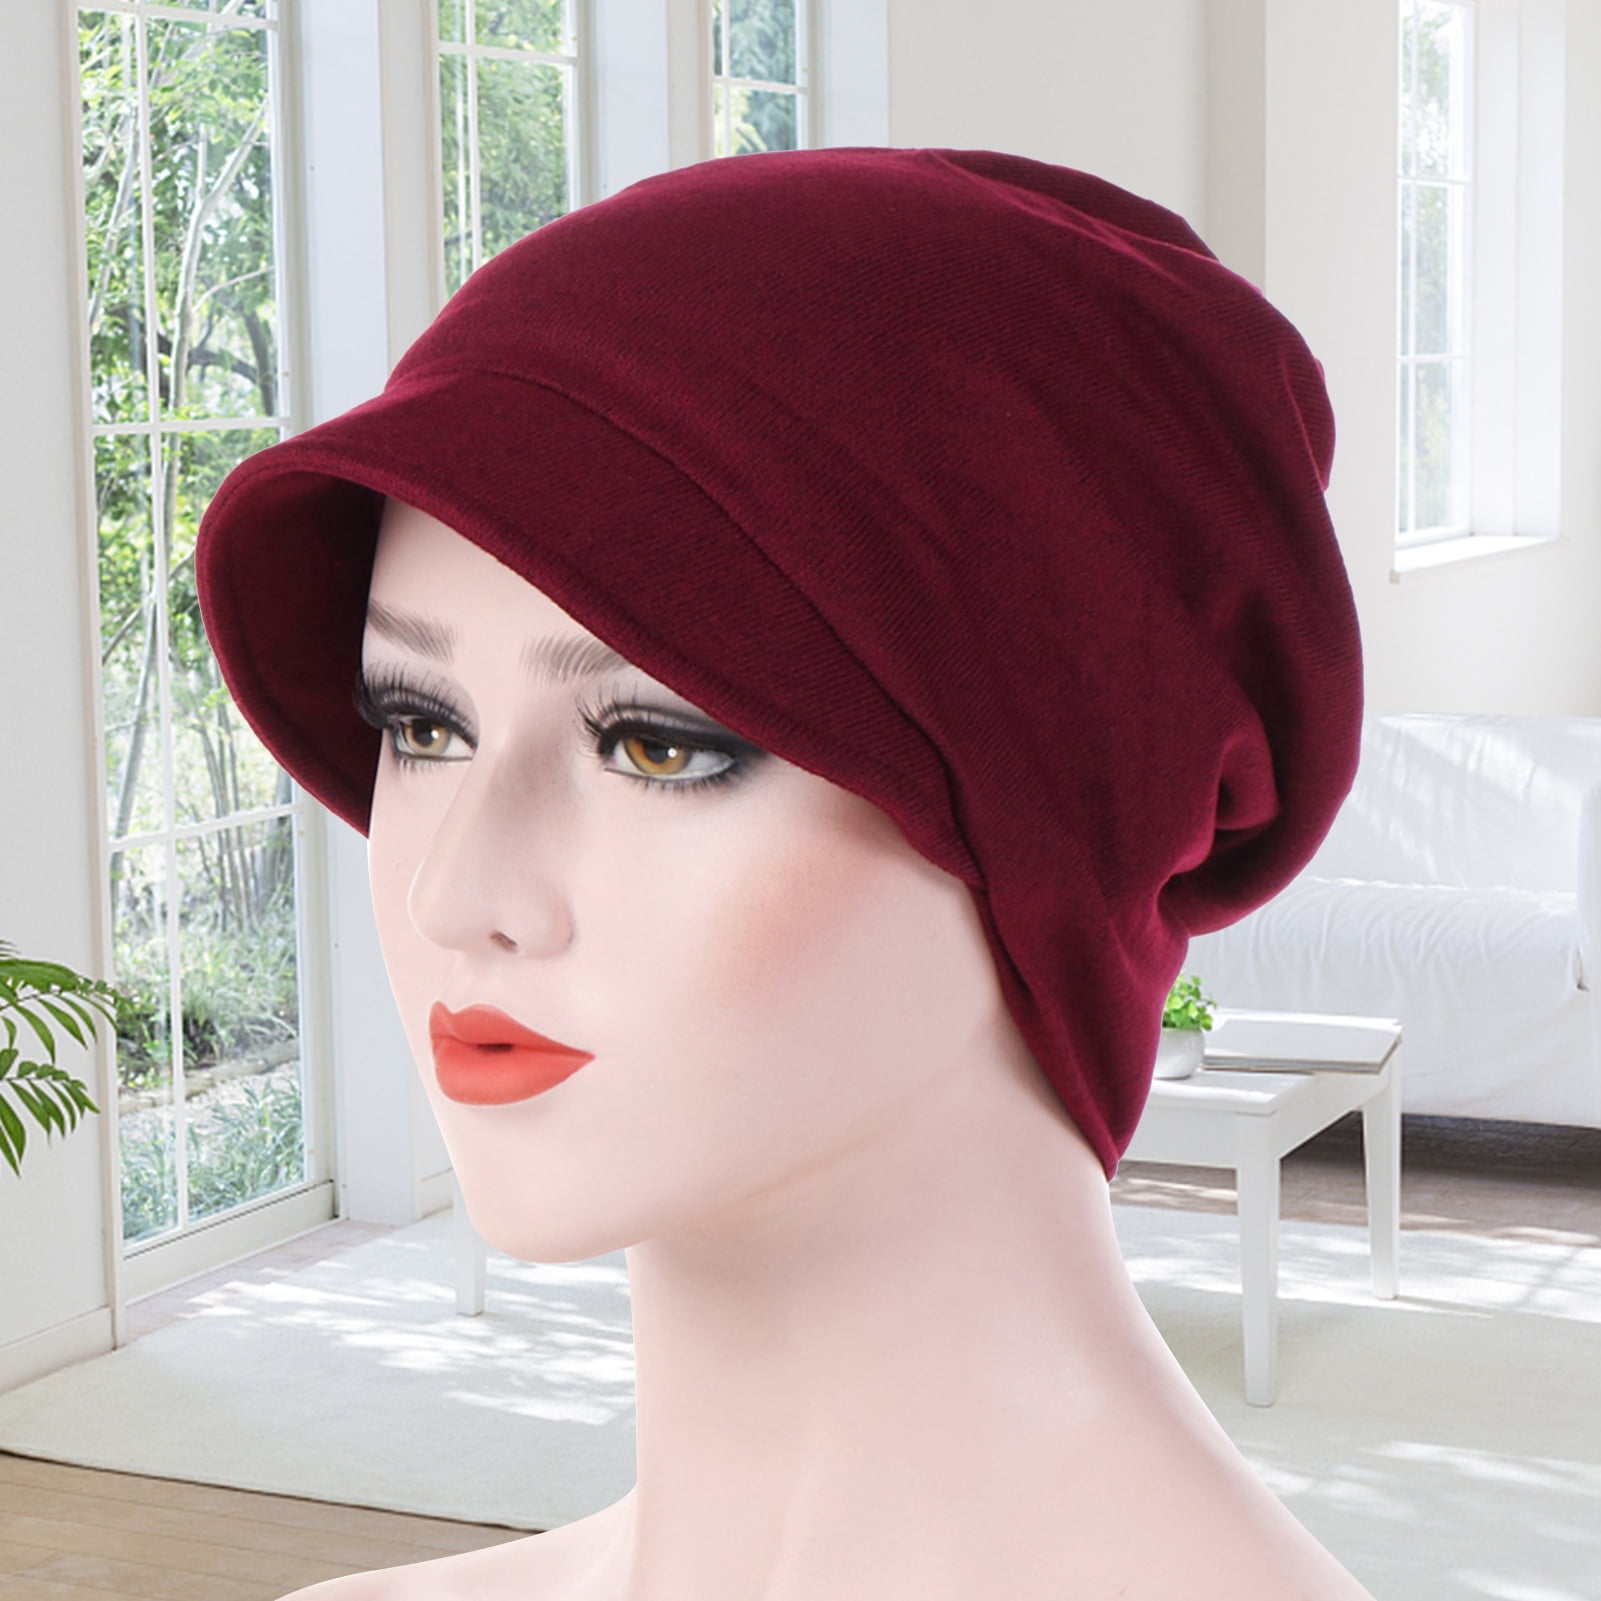 Biplut Fashion Warm Cotton Women Solid Color Beanie Cap for Autumn